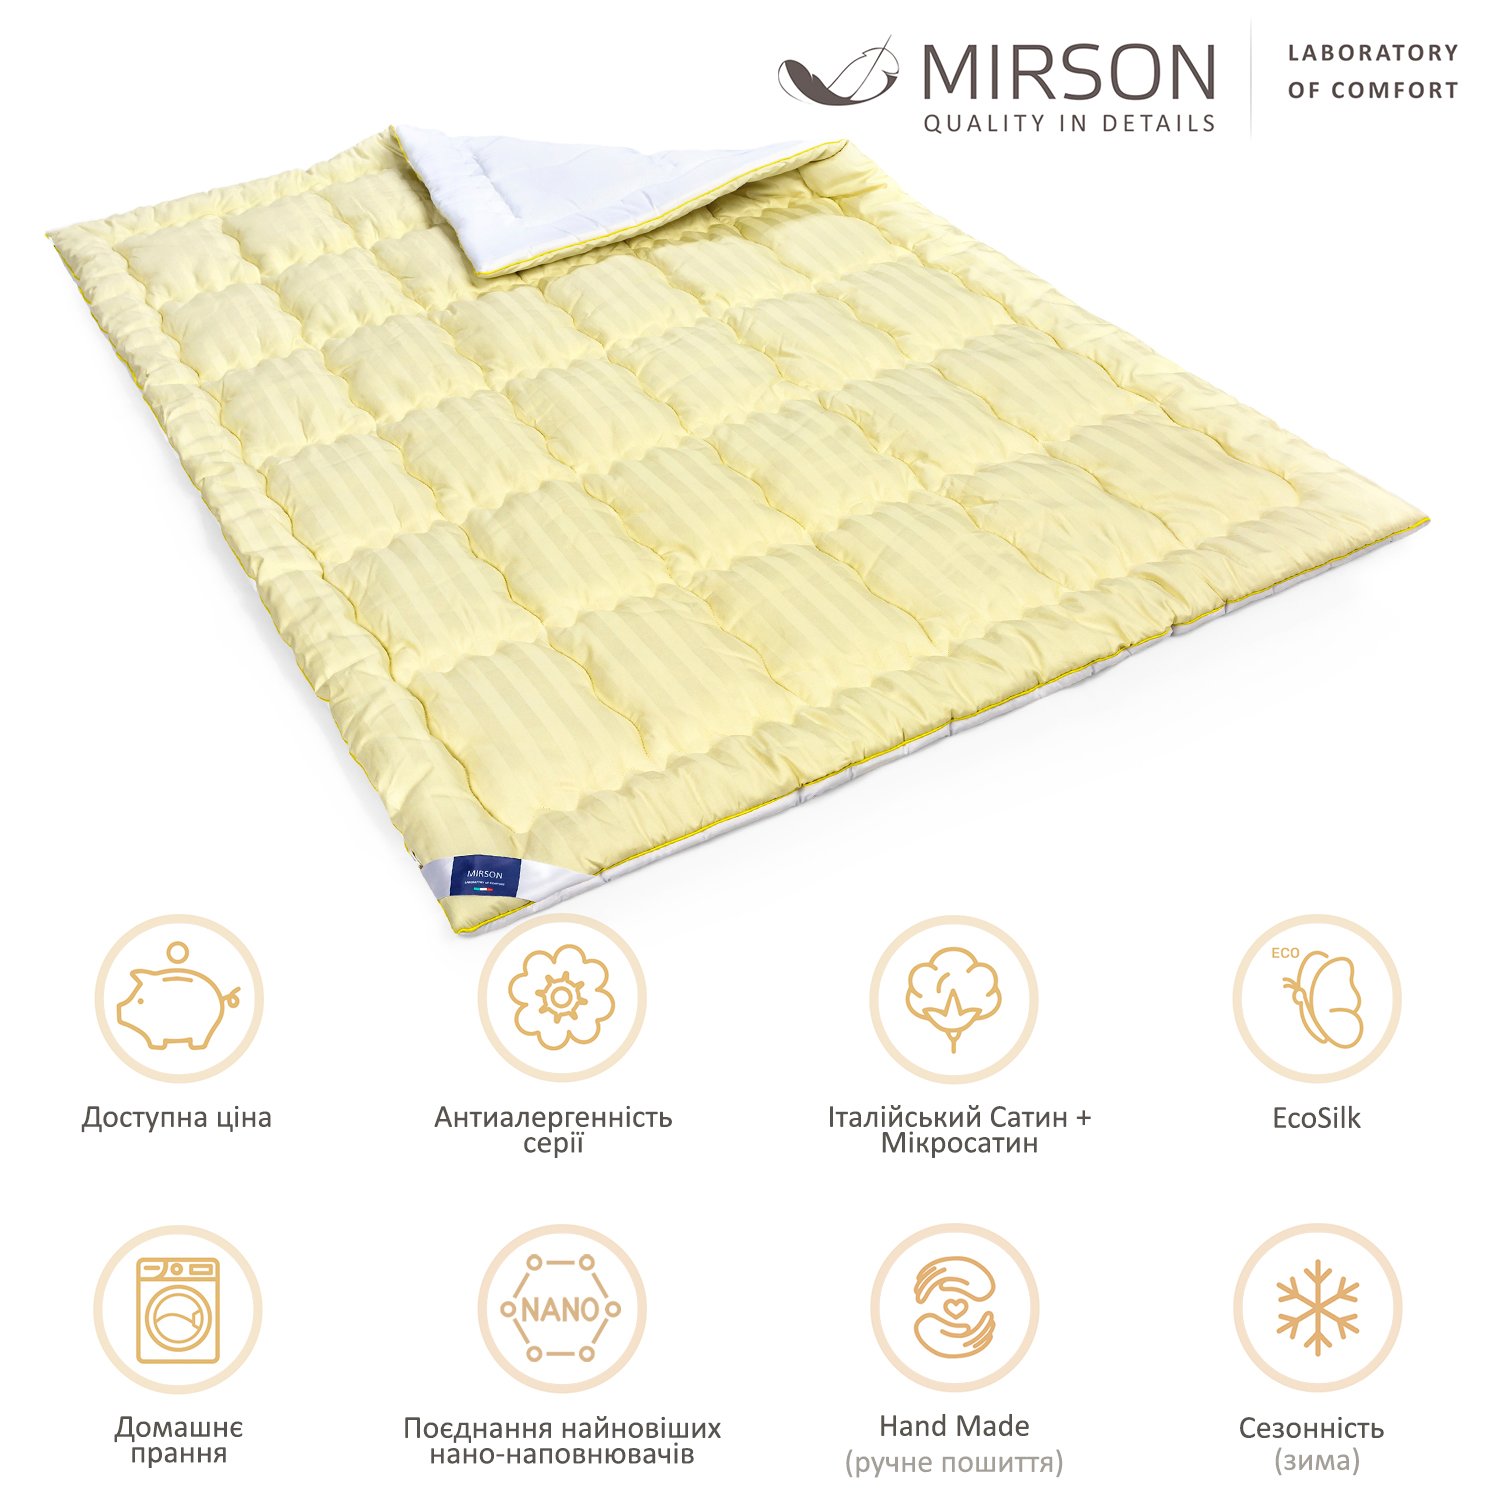 Одеяло антиаллергенное MirSon Carmela Hand Made EcoSilk №0555, зимнее, 200x220 см, желто-белое - фото 6